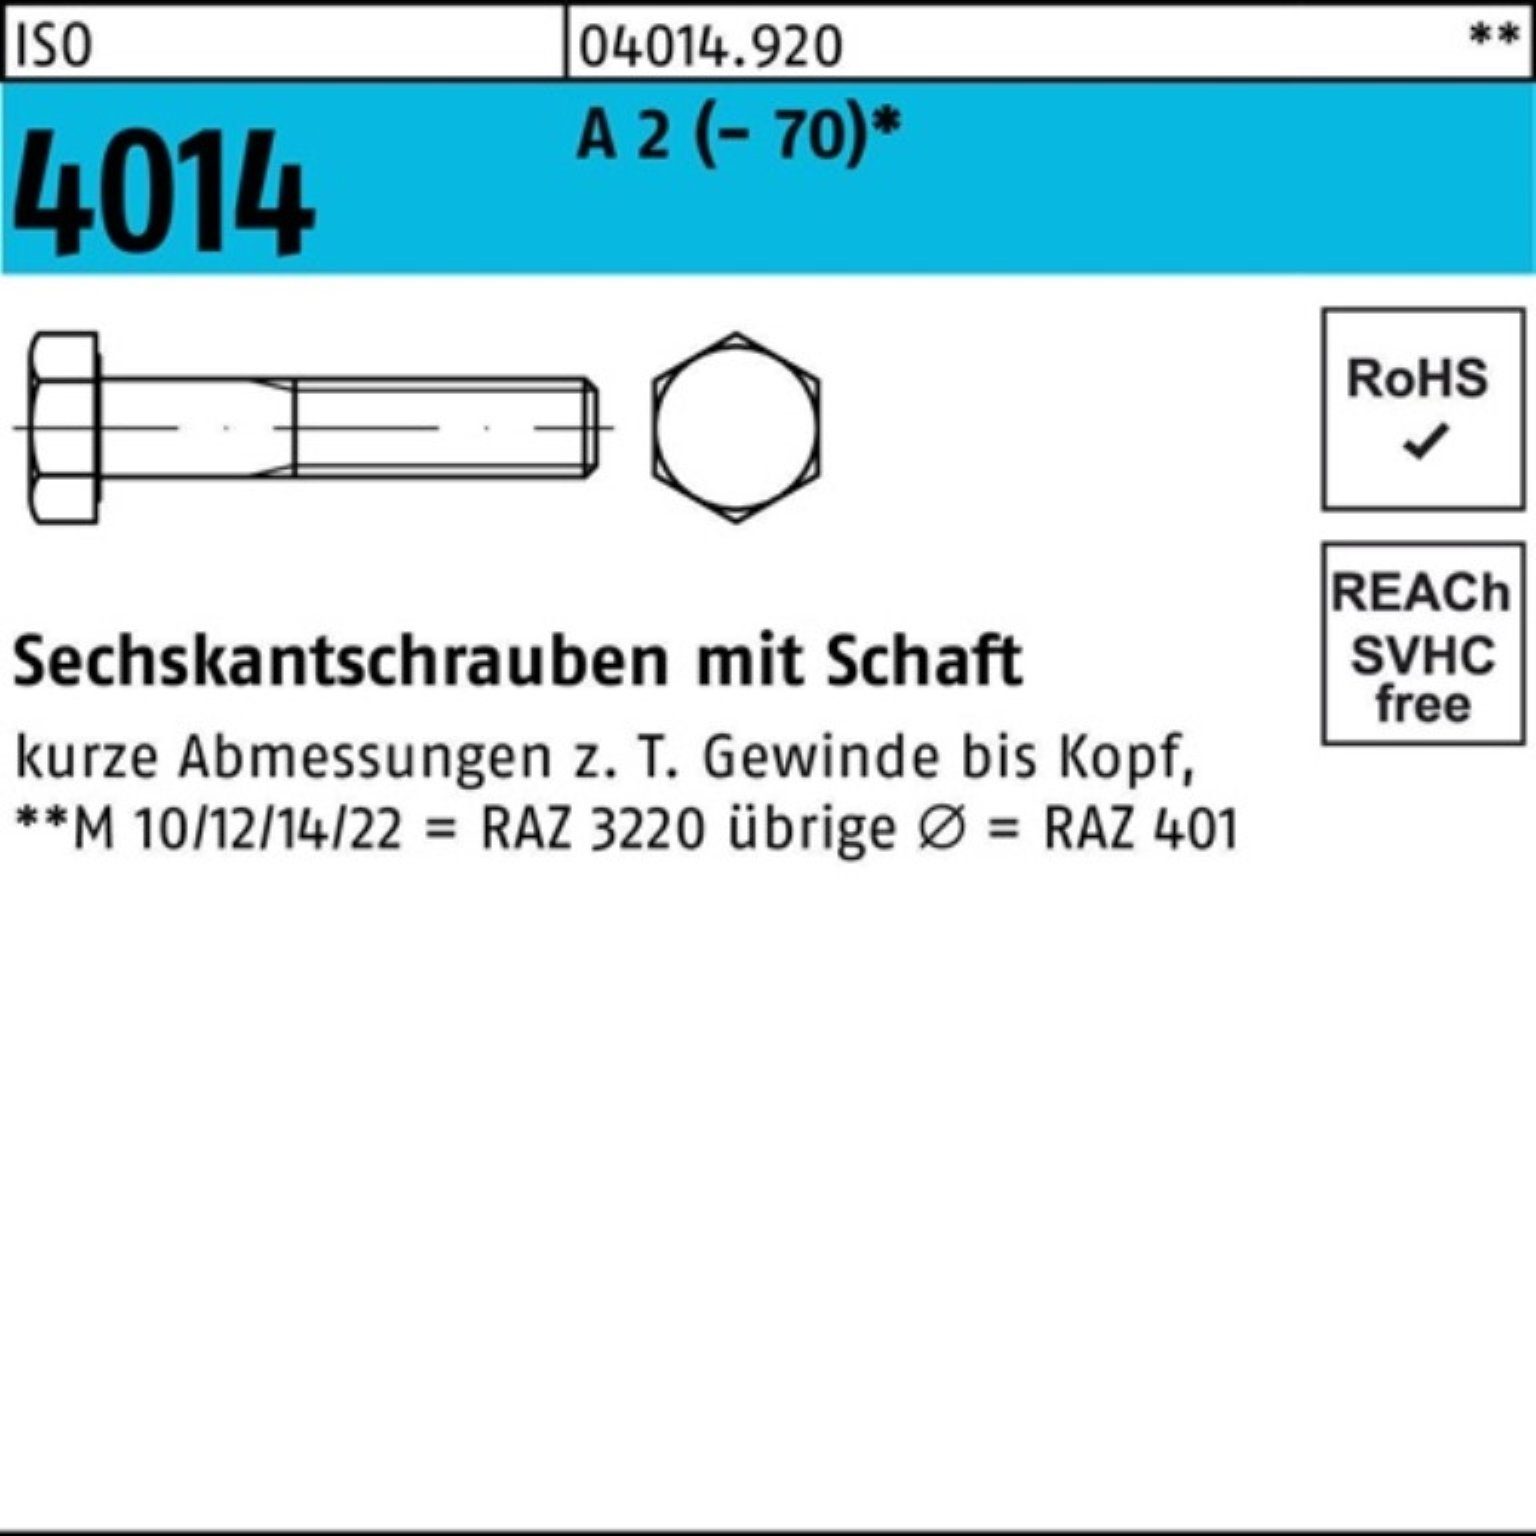 Bufab Sechskantschraube 100er Pack Sechskantschraube ISO 4014 Schaft M24x 230 A 2 (70) 1 St